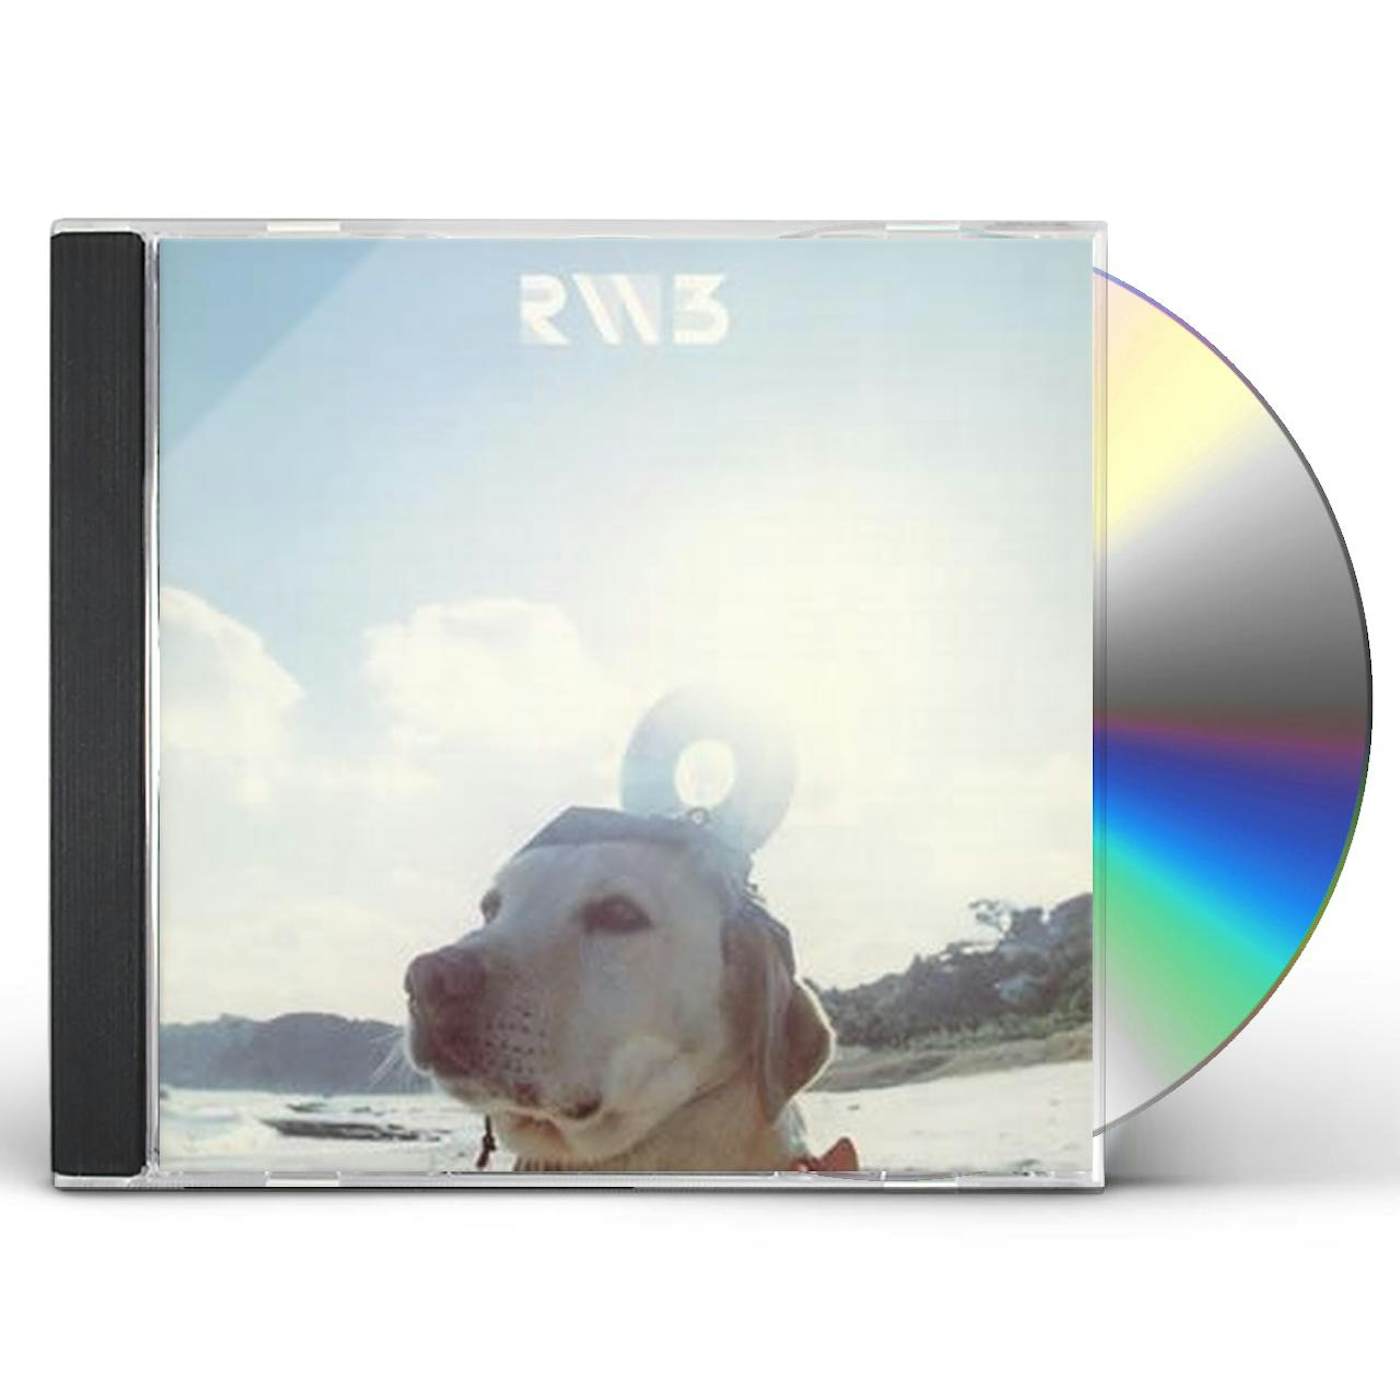 RADWIMPS3 CD